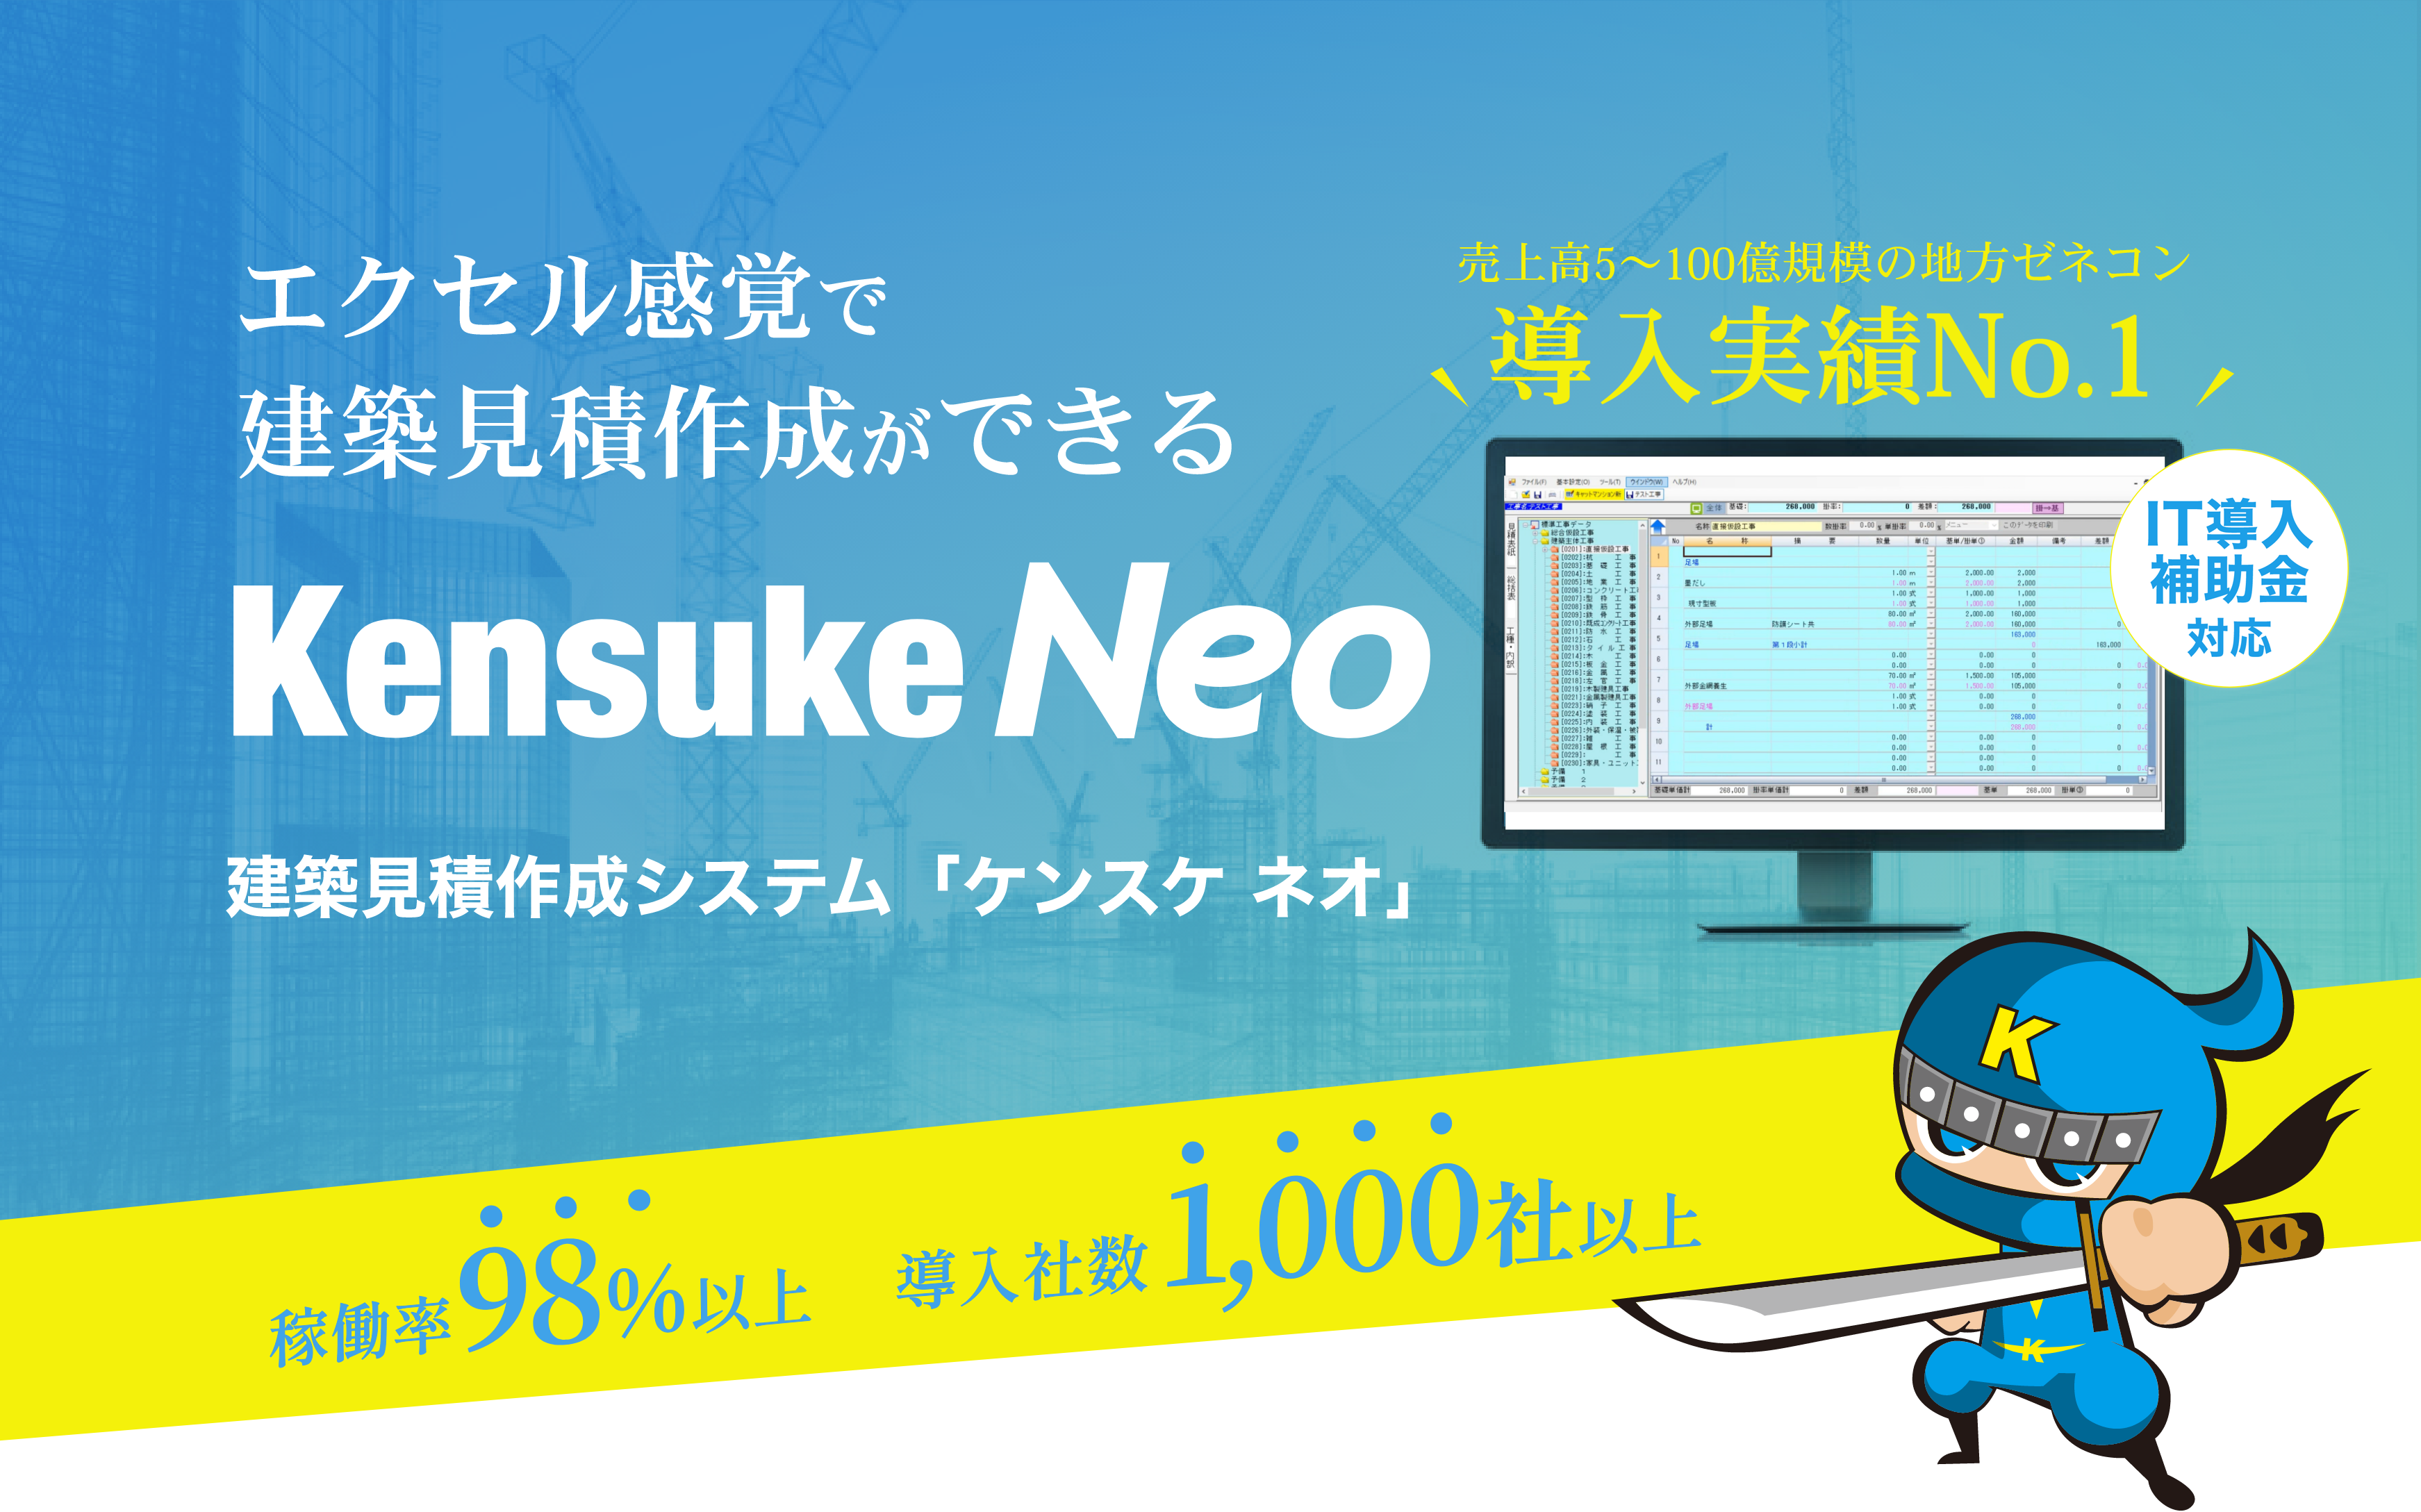 エクセル感覚で建築見積作成ができる「Kensuke Neo」